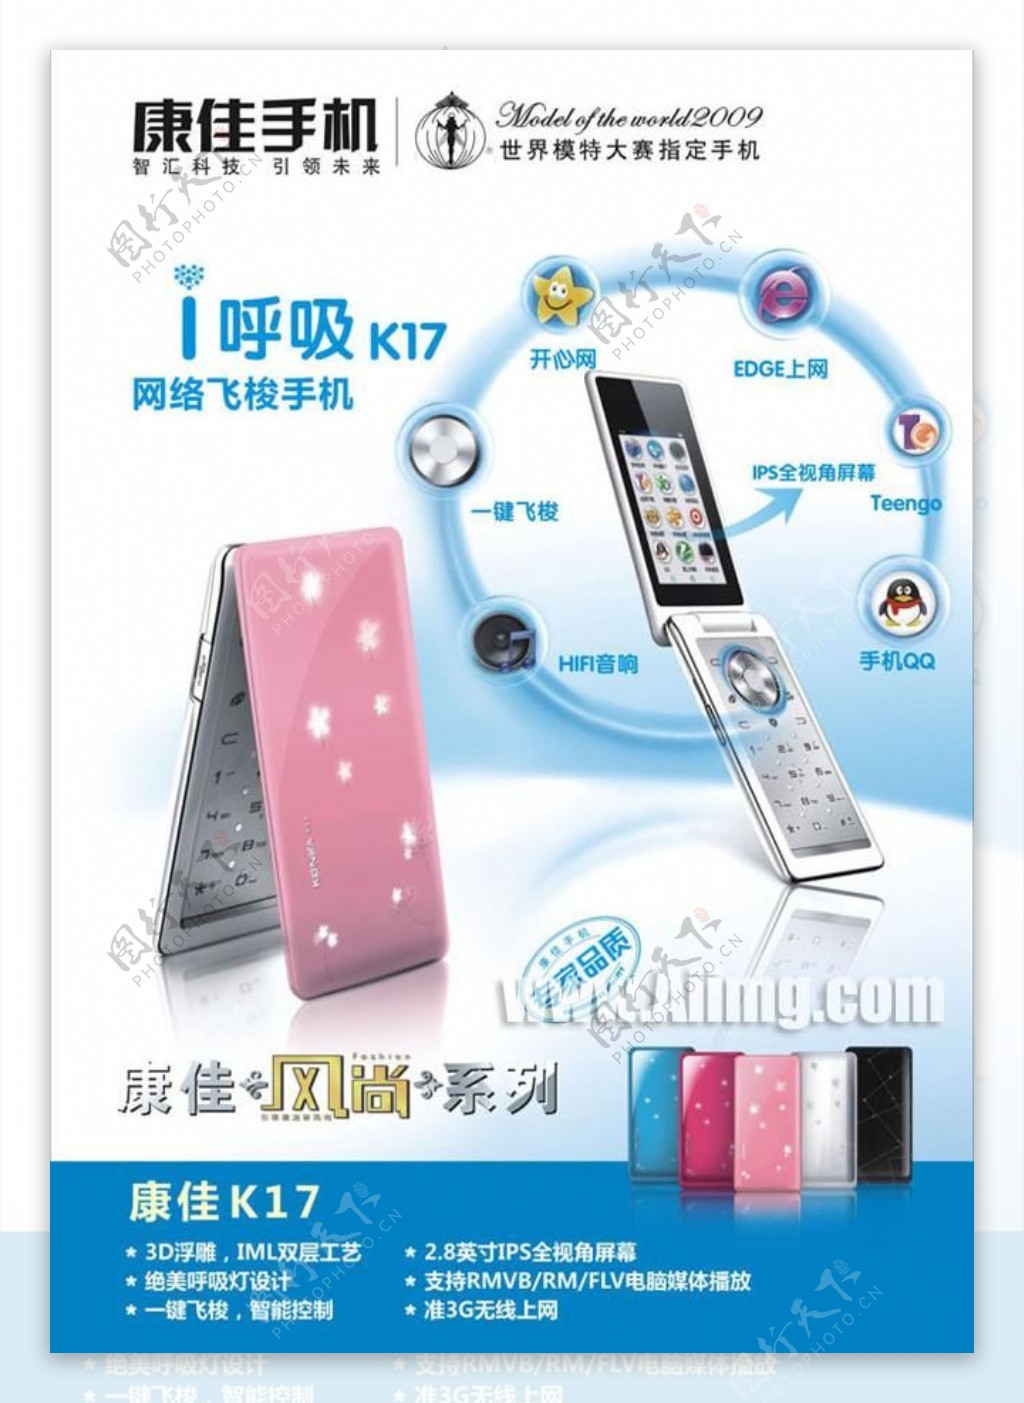 康佳K17手机宣传海报矢量素材